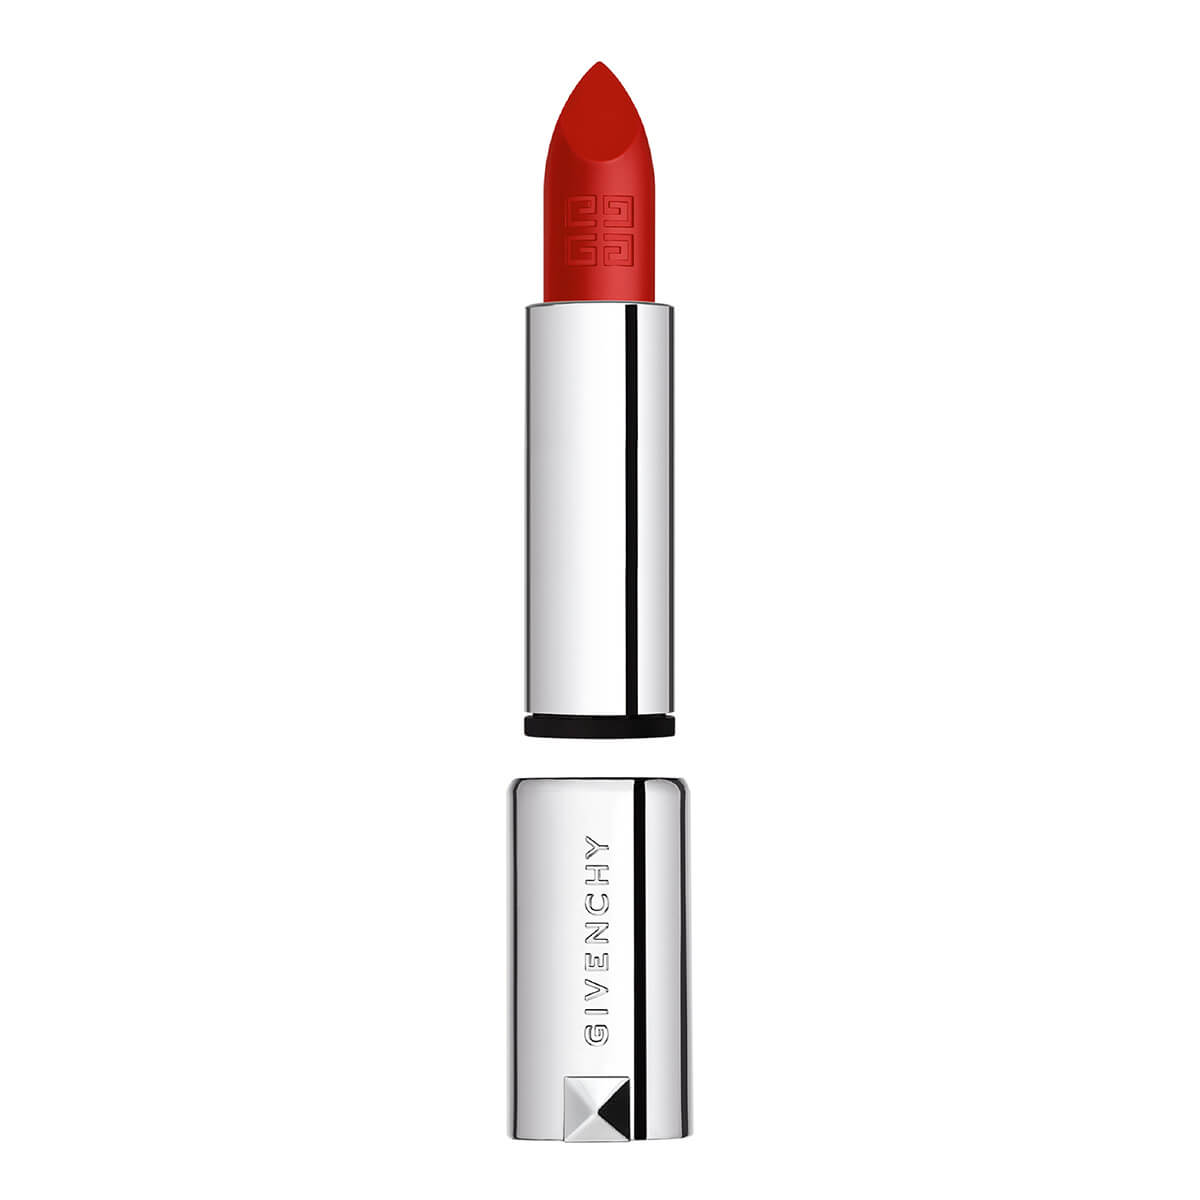 le rouge sheer velvet refill lipstick de givenchy (recarga labial mate efecto difuminado larga duración)